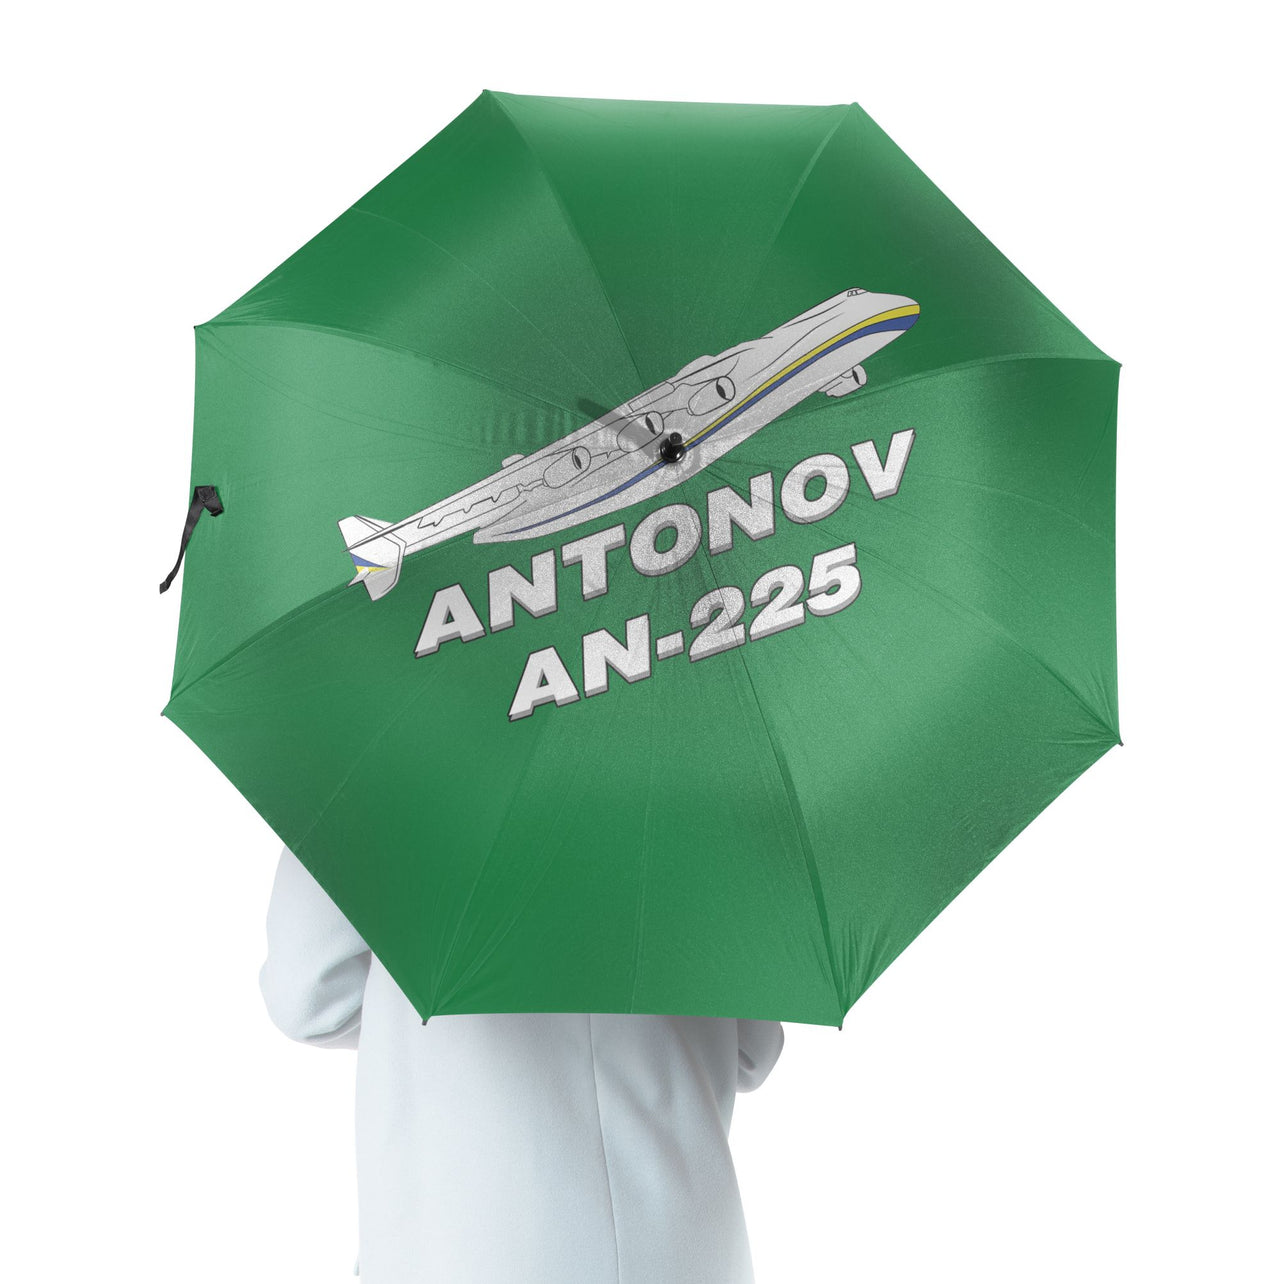 Antonov AN-225 (27) Designed Umbrella